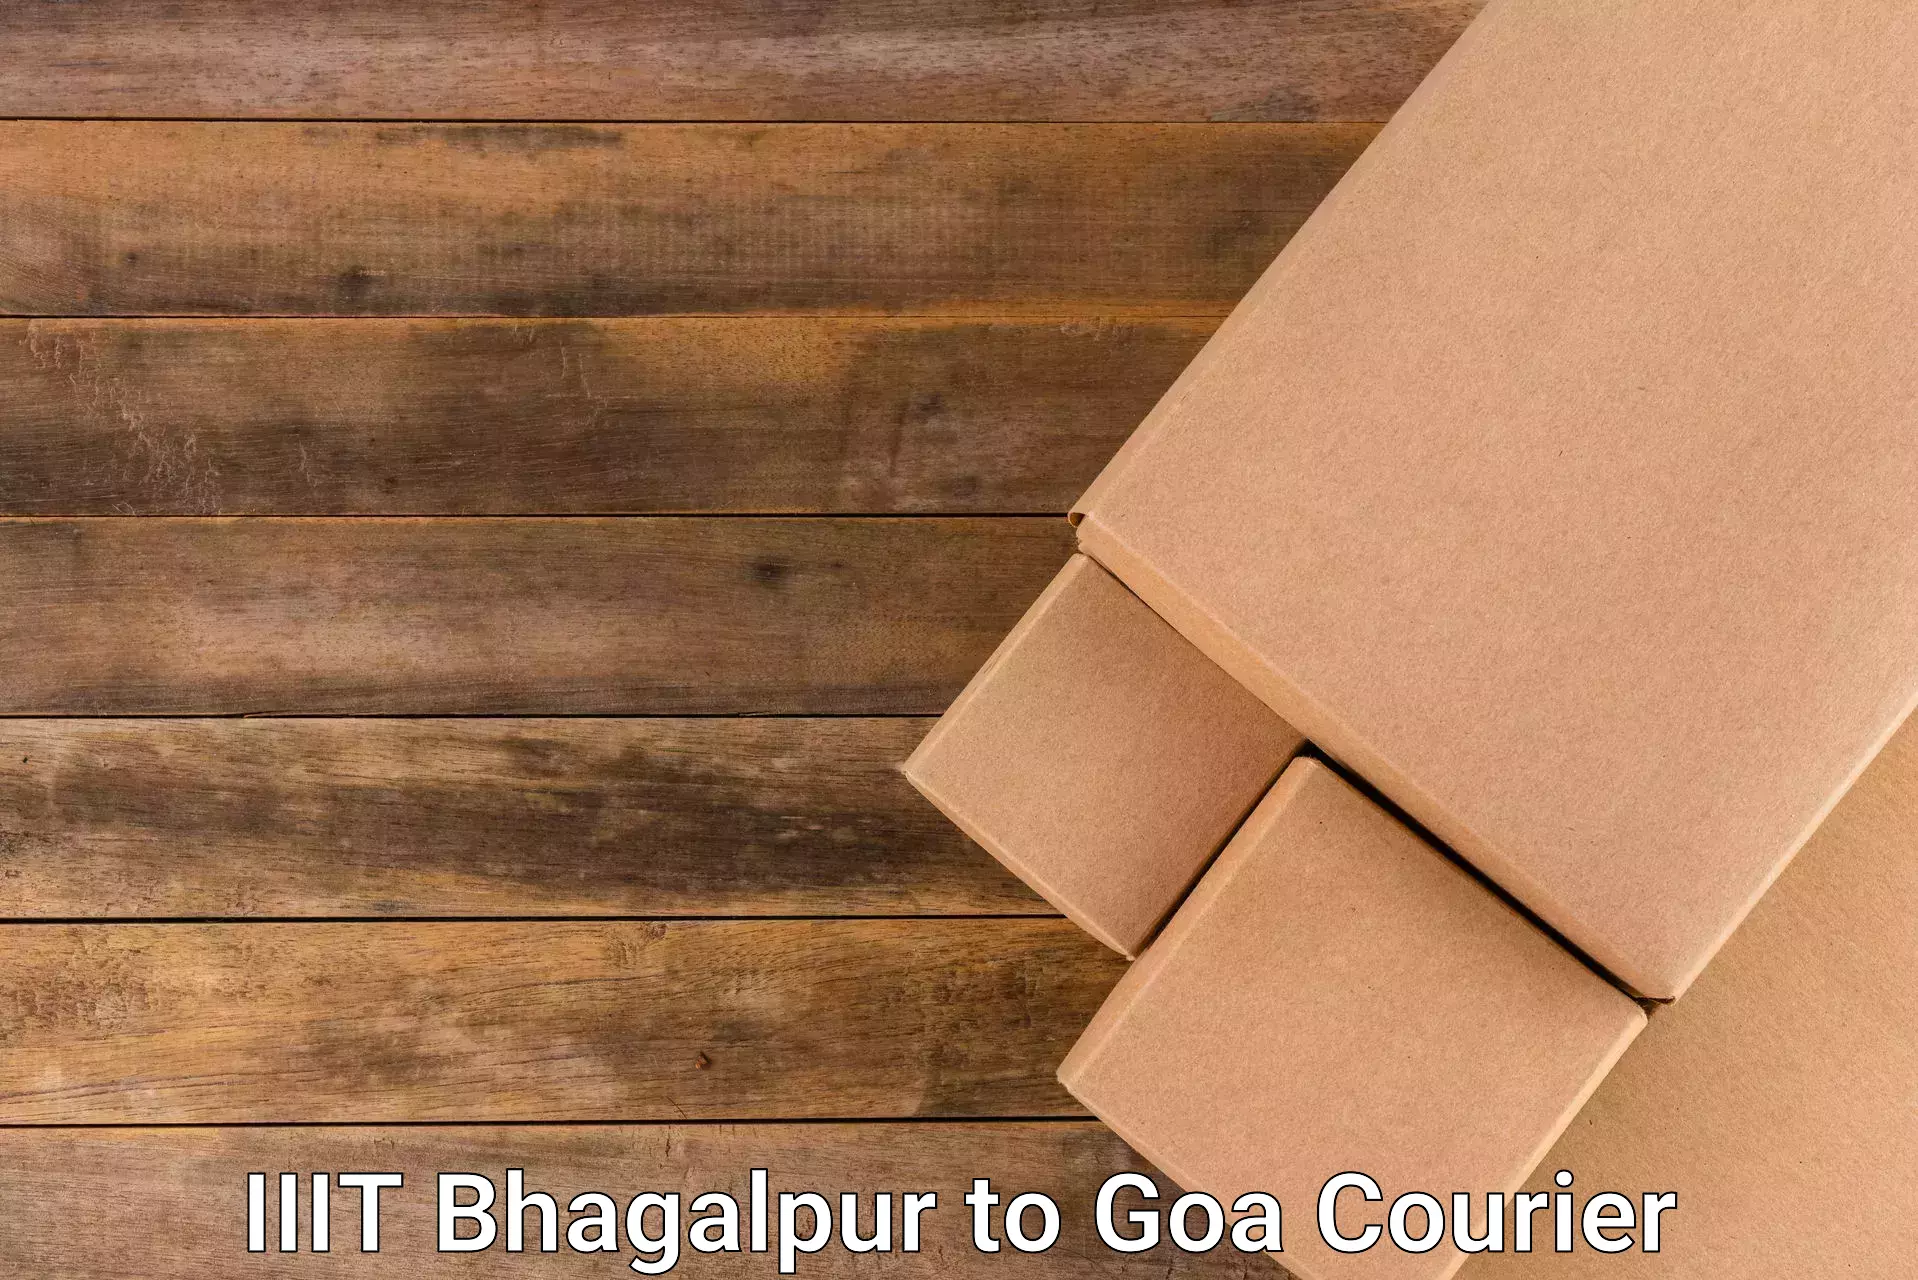 Multi-package shipping IIIT Bhagalpur to IIT Goa